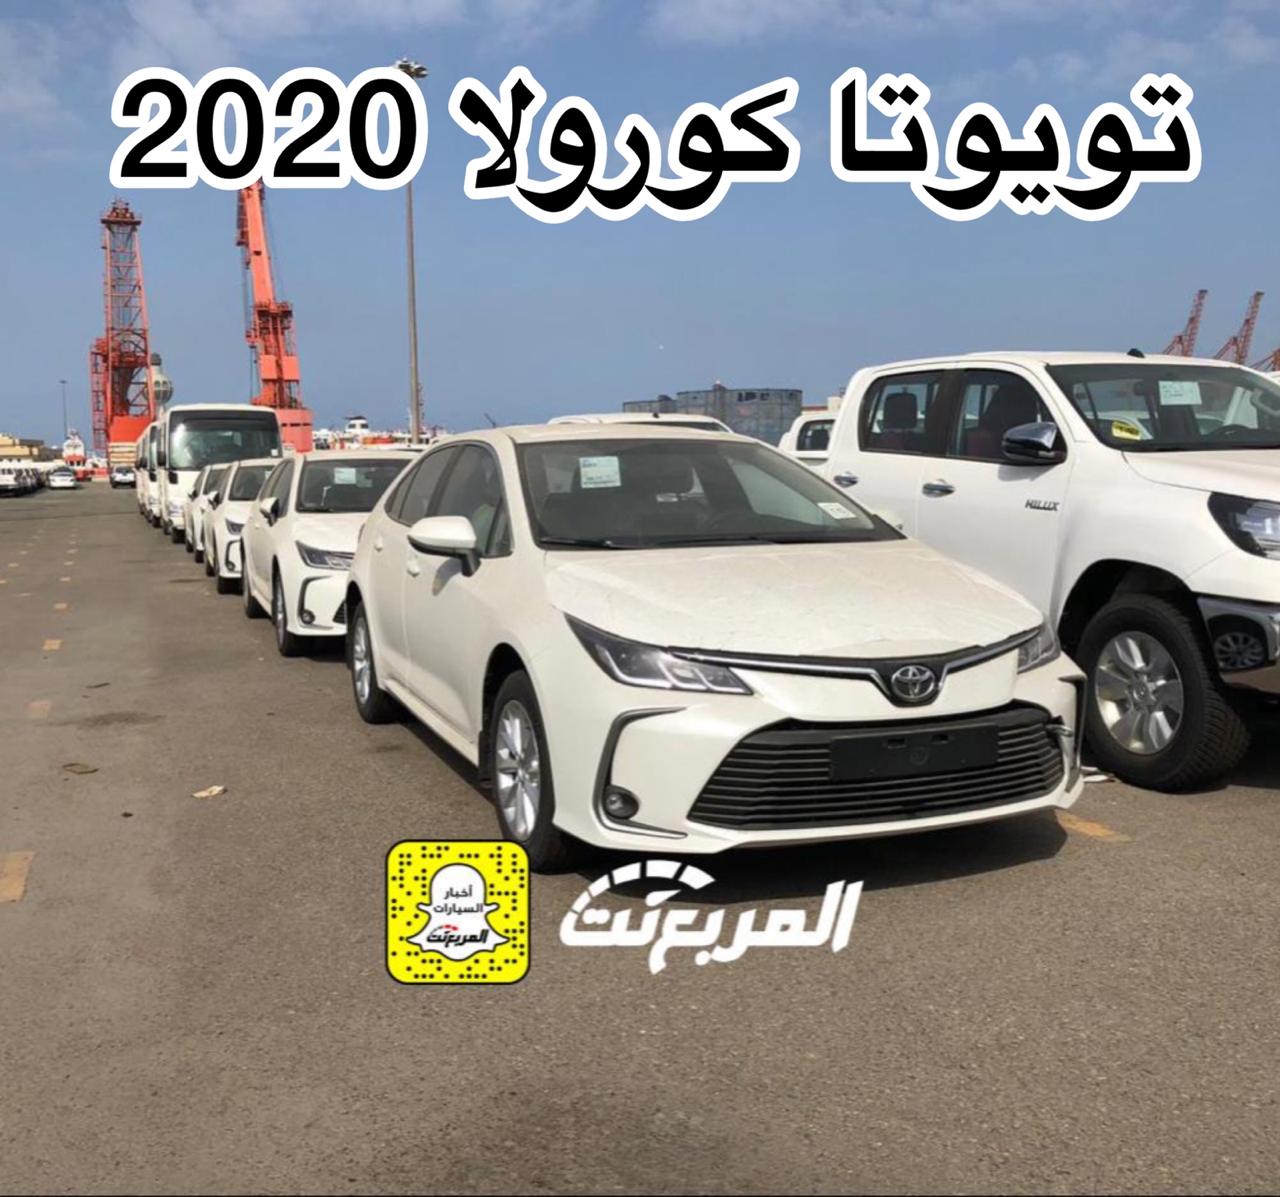 “بالصور” وصول تويوتا كورولا 2020 الجديدة الى السعودية + معلومات Toyota Corolla 6